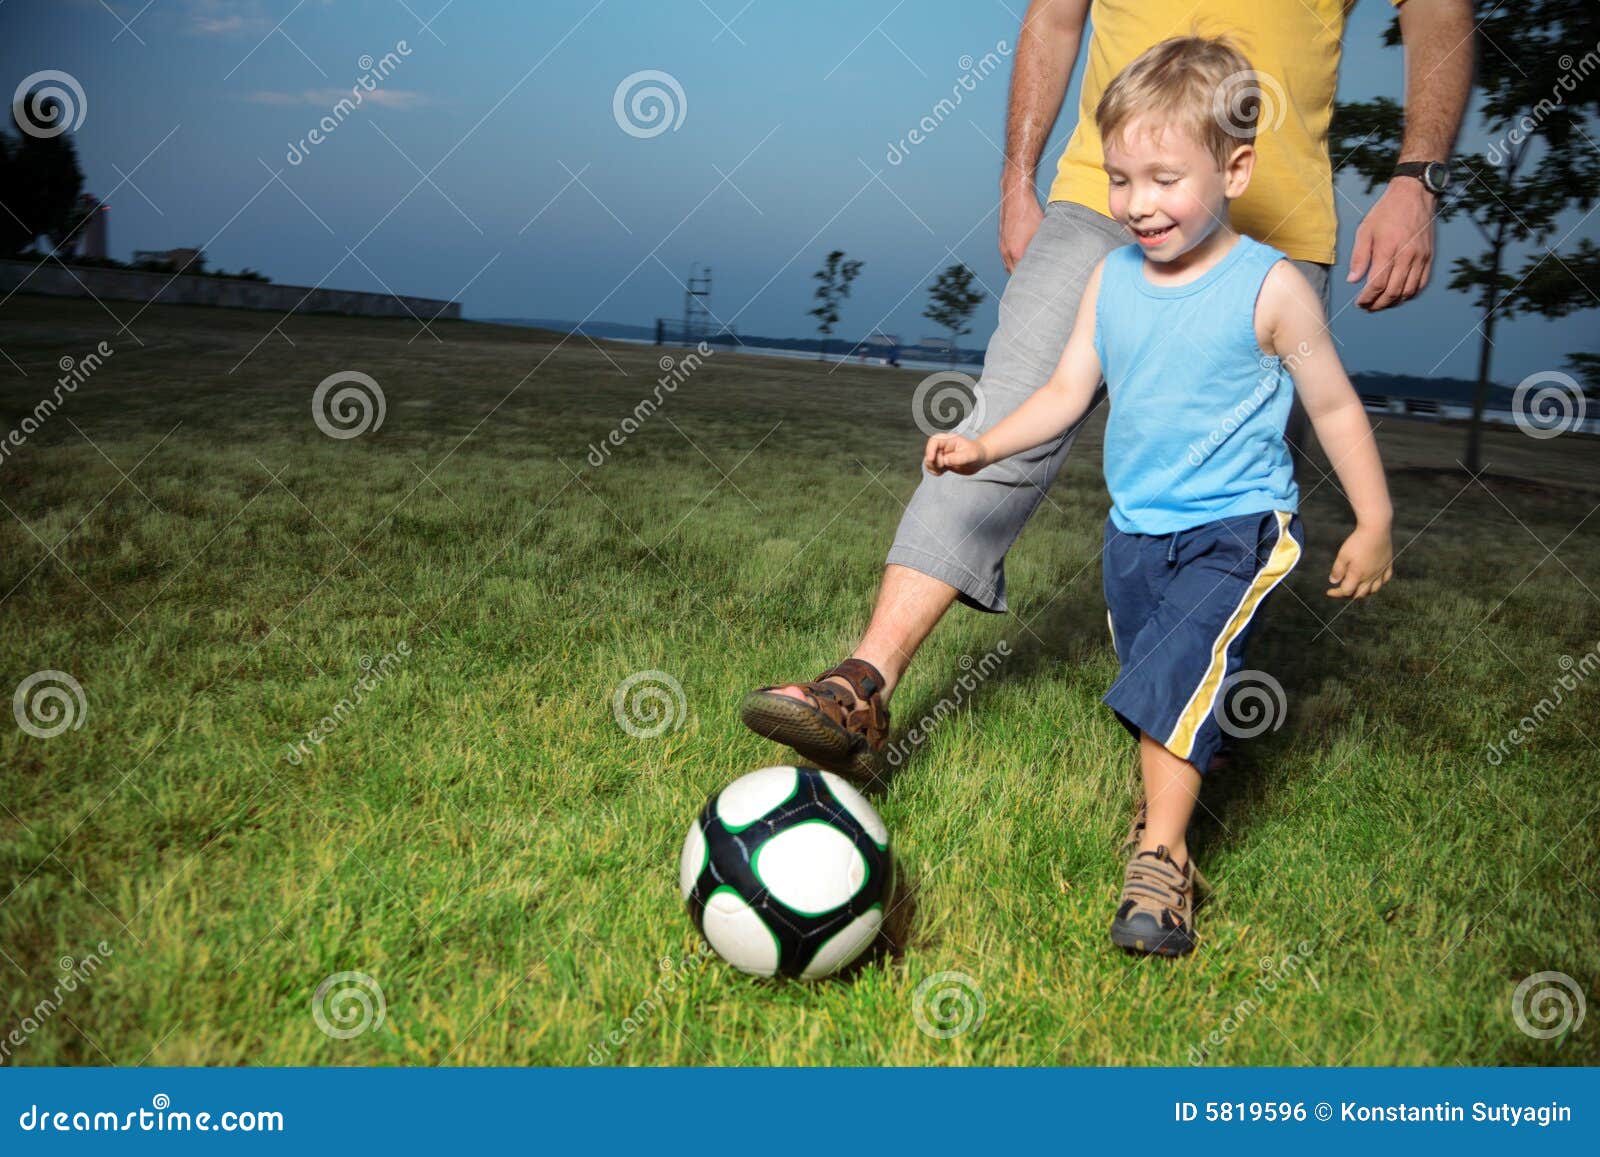 Папы играют в футбол. Фотография папа играет в футбол. Фотосессия сын футбол. Фотосессия папа и сын с футбольным мячом. Папа с сыном играют в футбол.